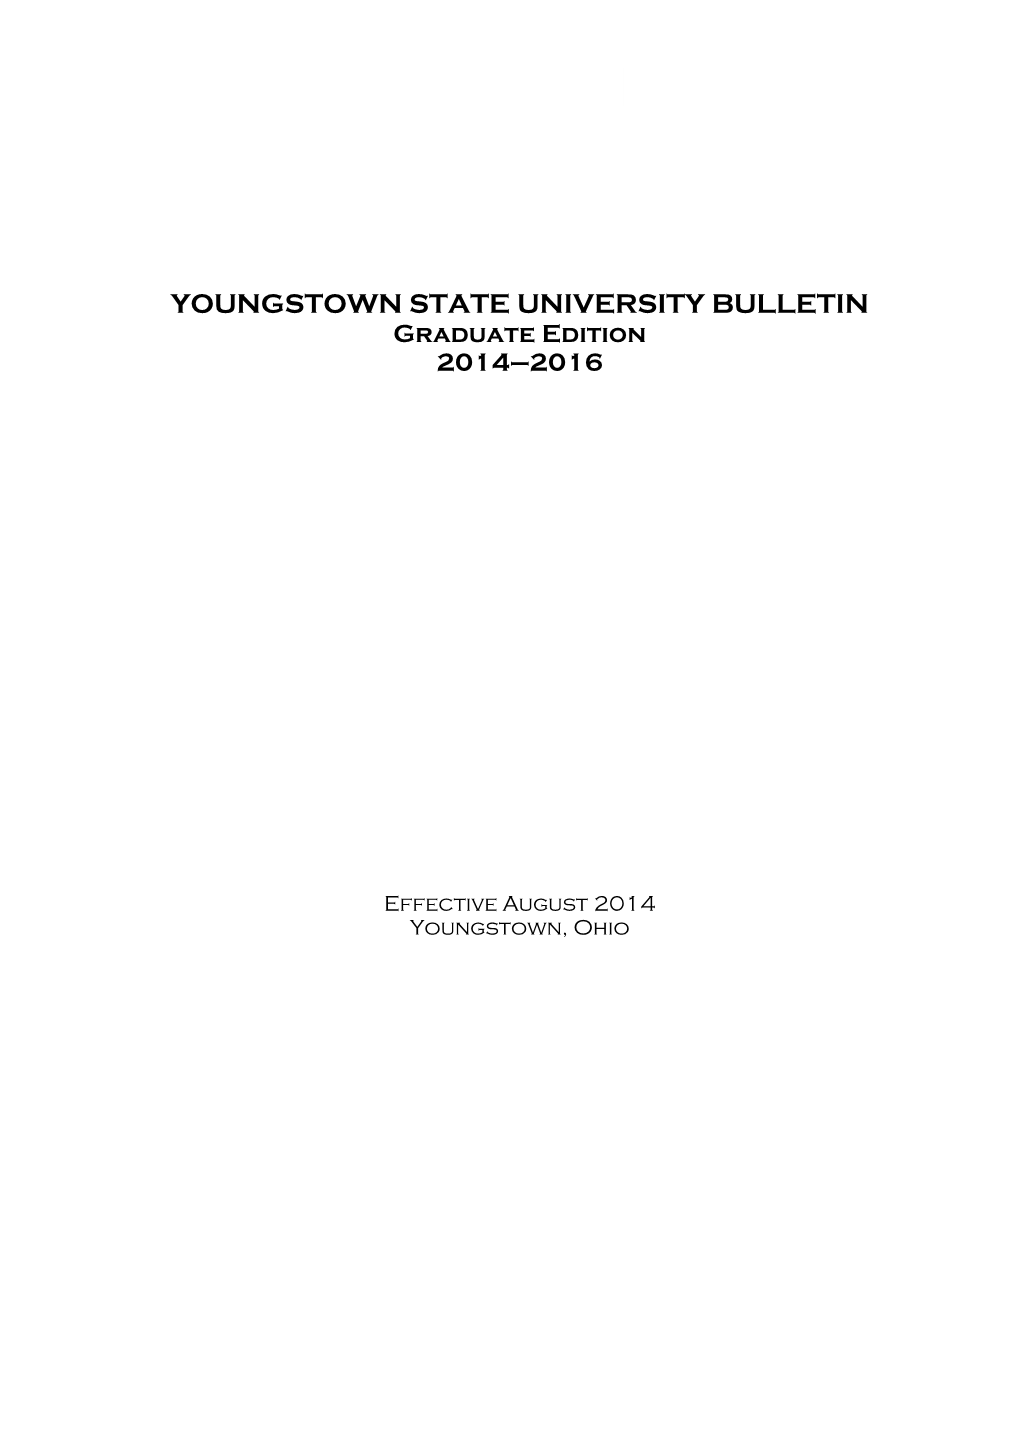 Graduate Bulletin 2014-16